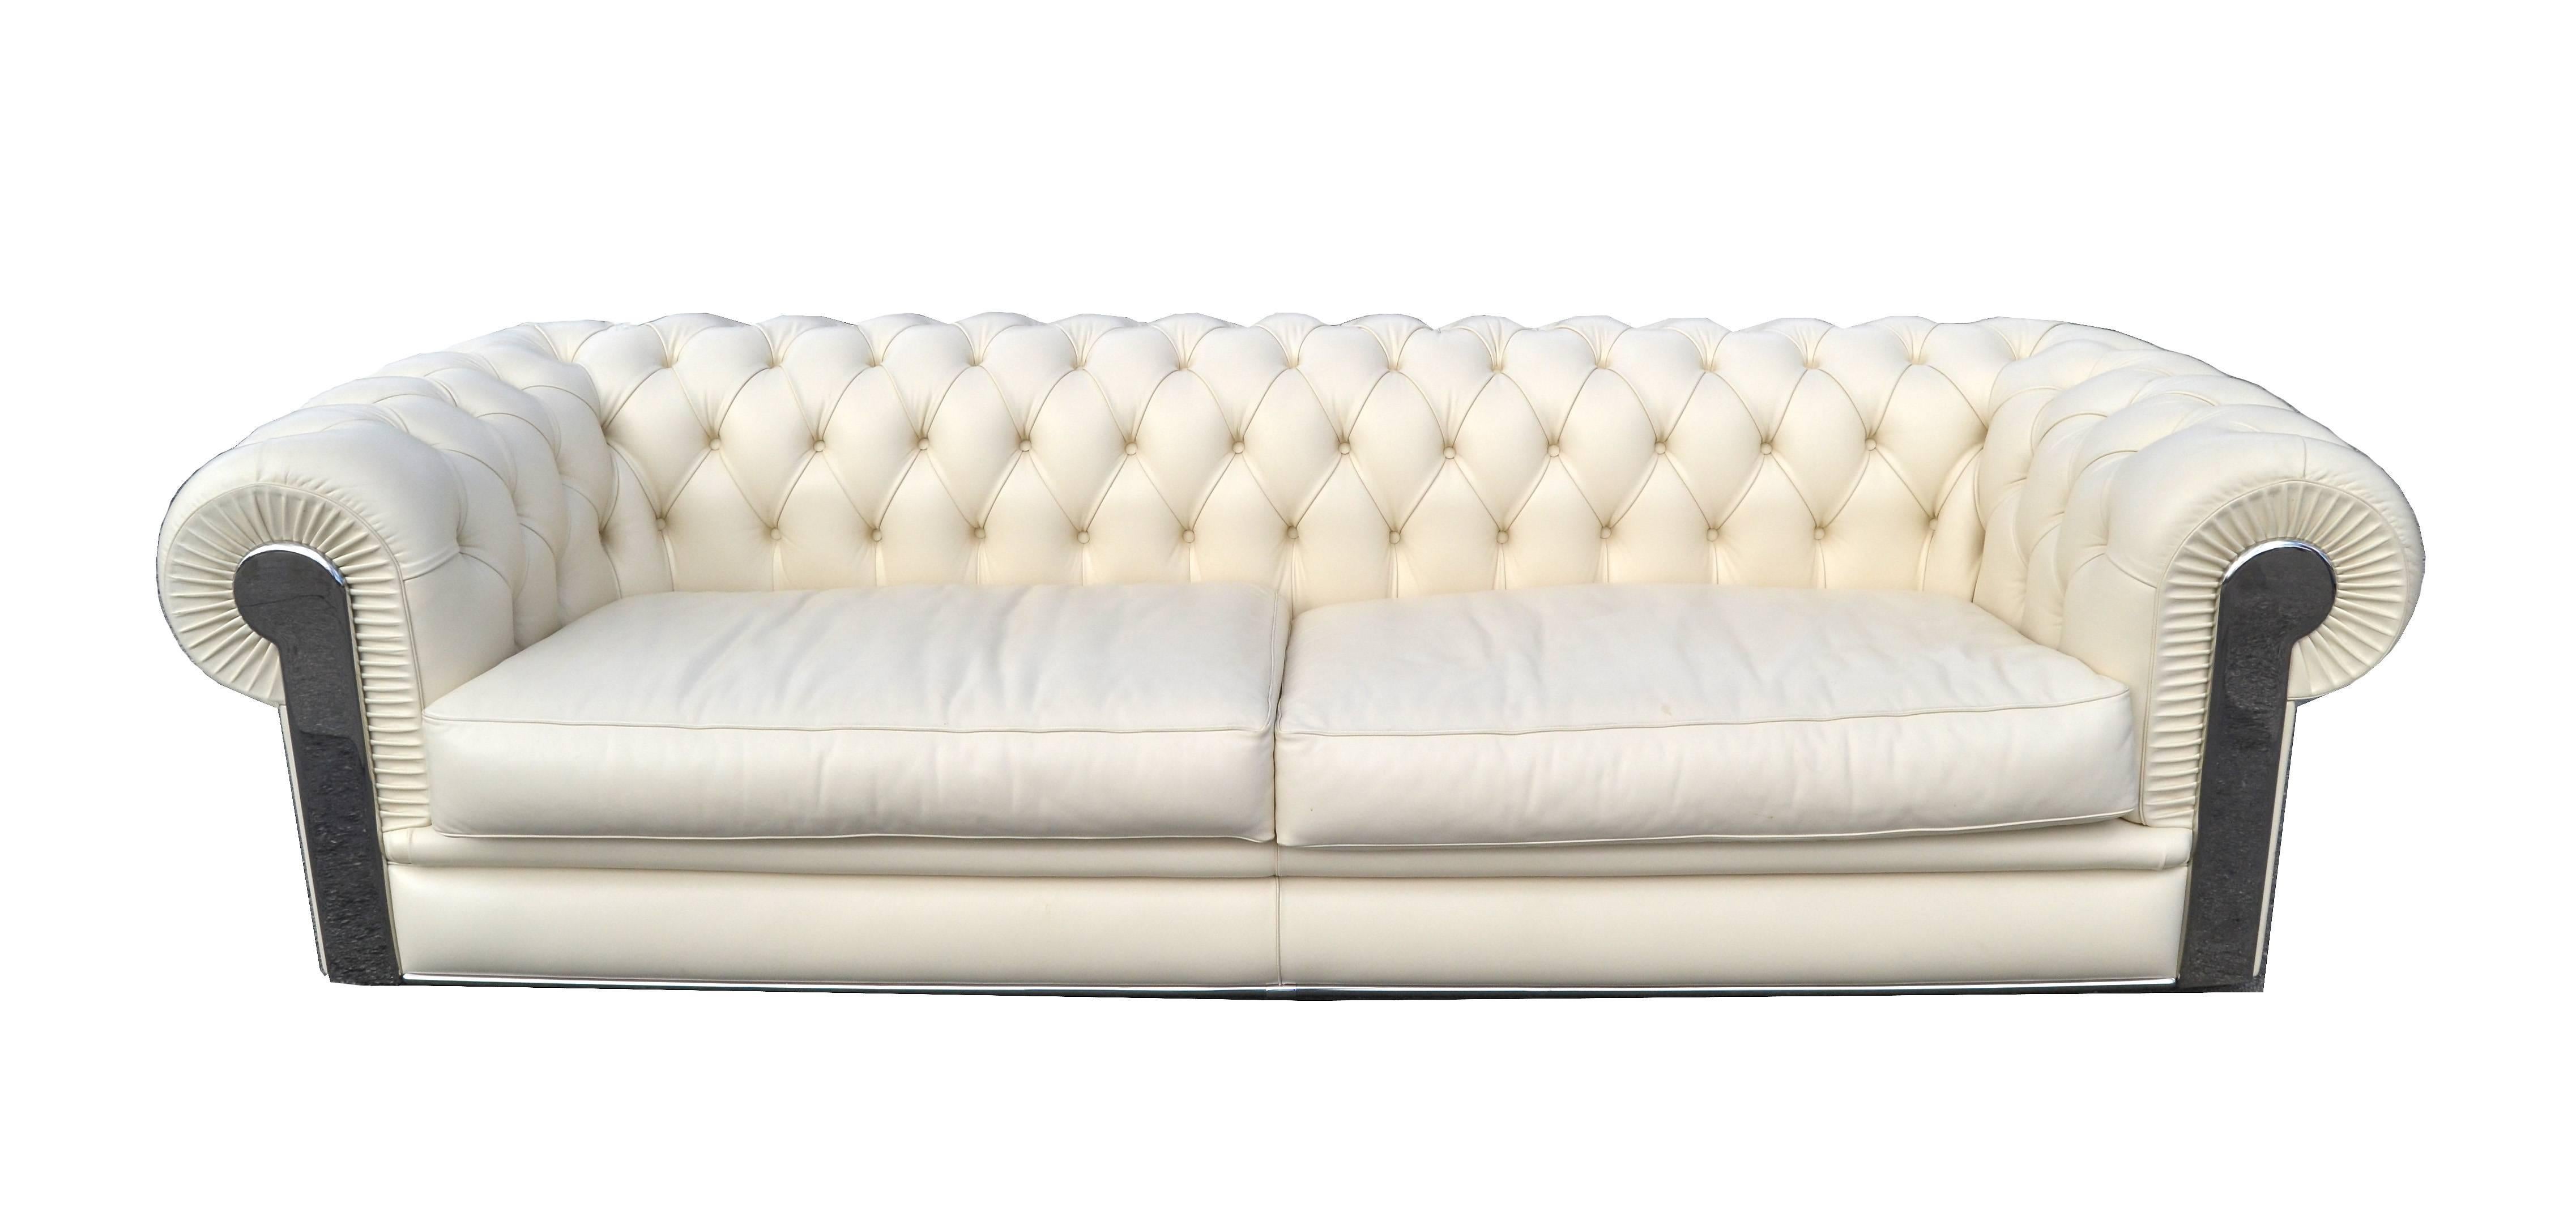 Fendi Casa Albino Tufted Leather Sofa in Chesterfield Style In Good Condition In Miami, FL